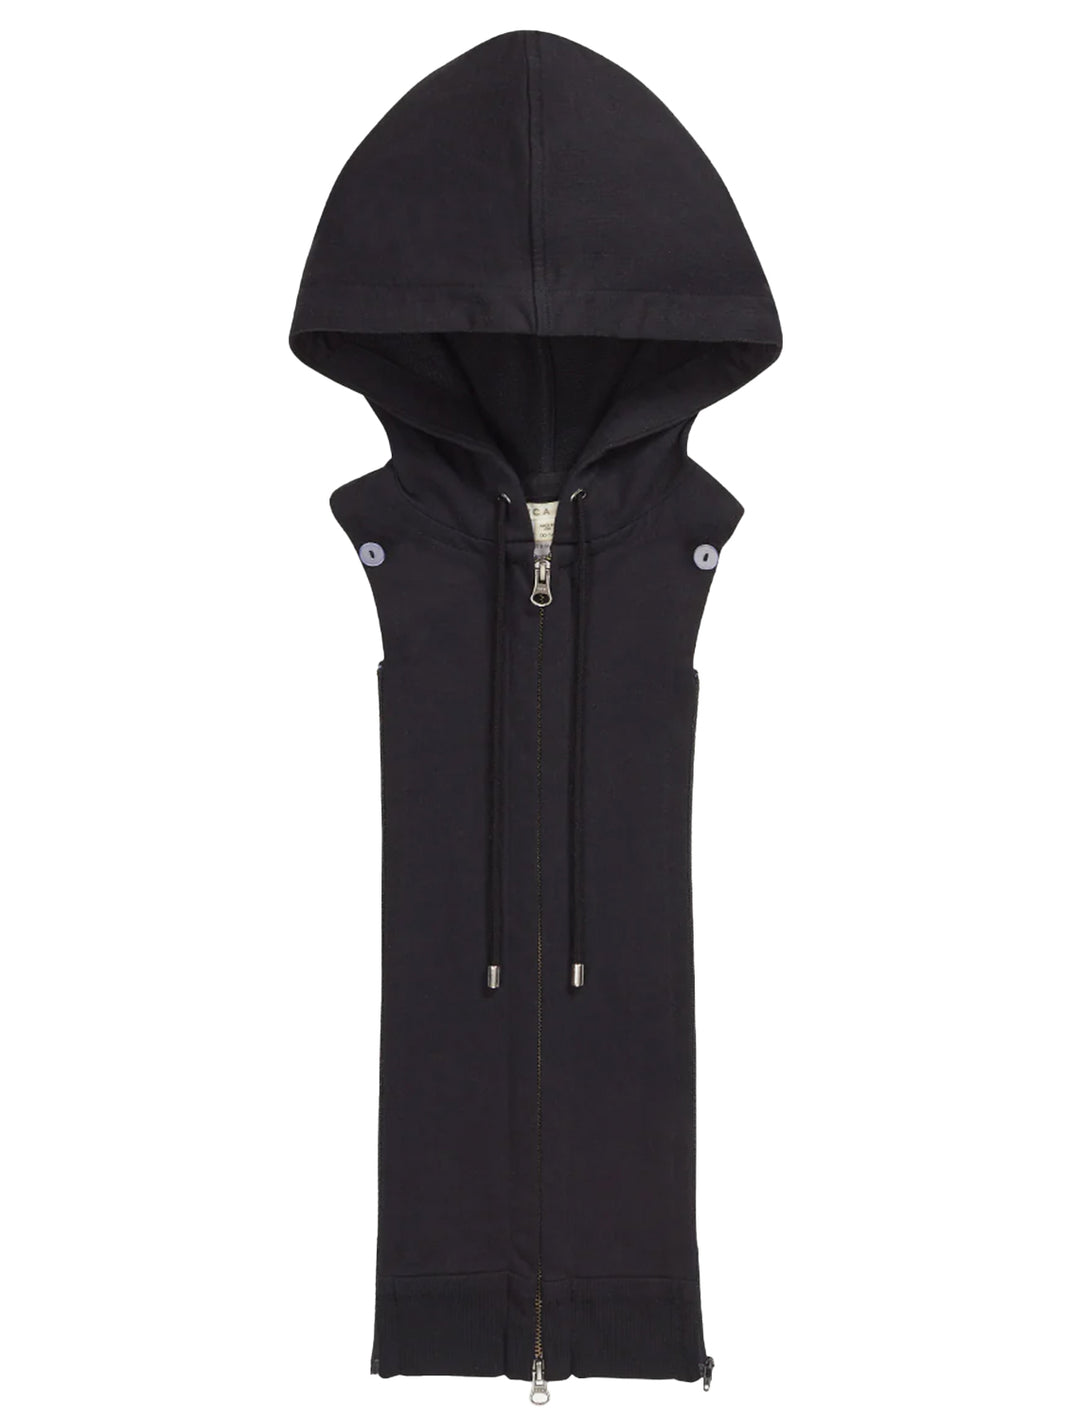 Front view of Veronica Beard's hoodie dickey in black.